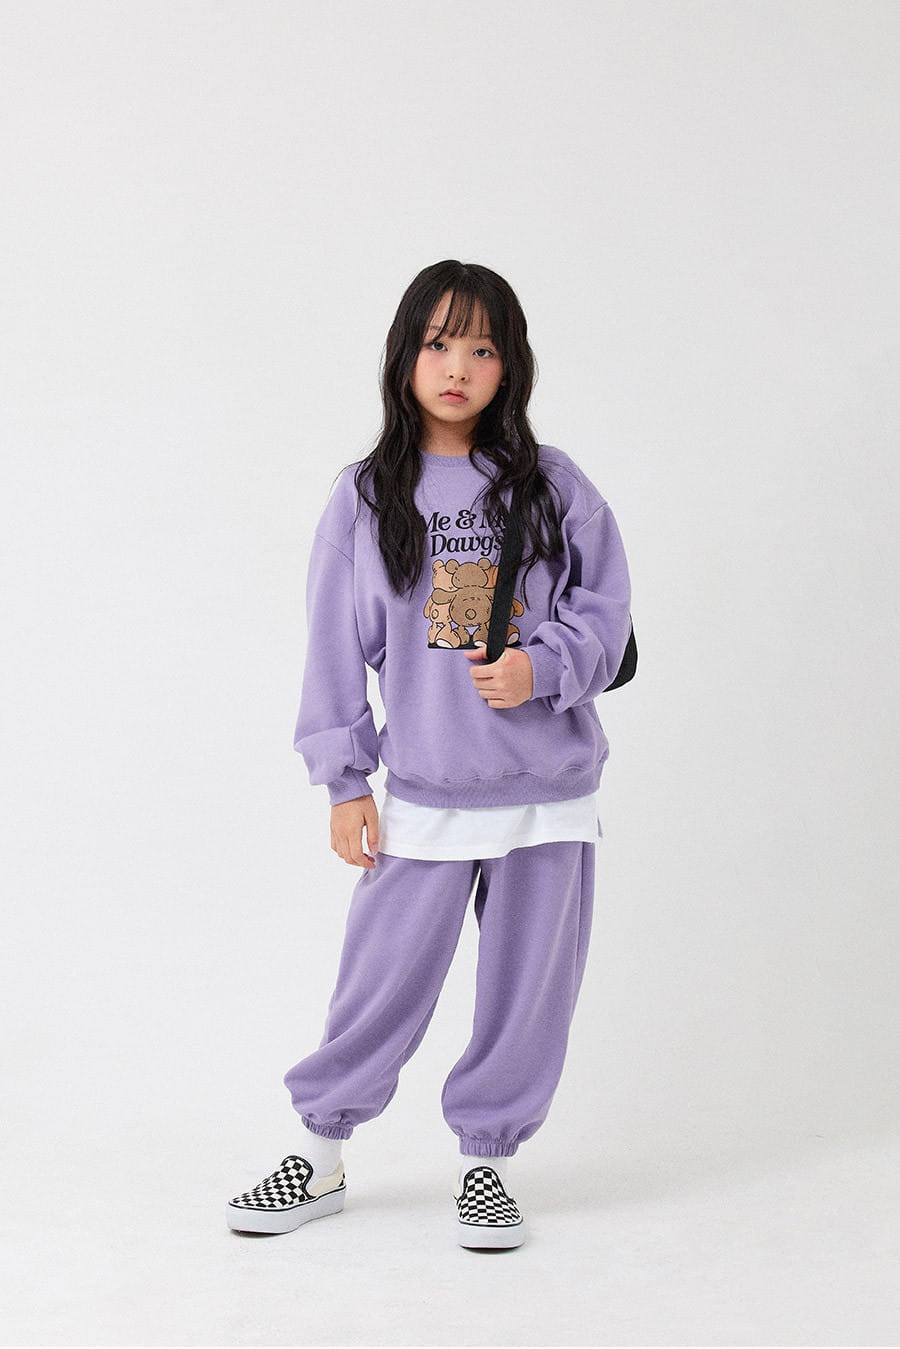 Whitesketchbook - Korean Children Fashion - #designkidswear - Trio Top Bottom Set - 4